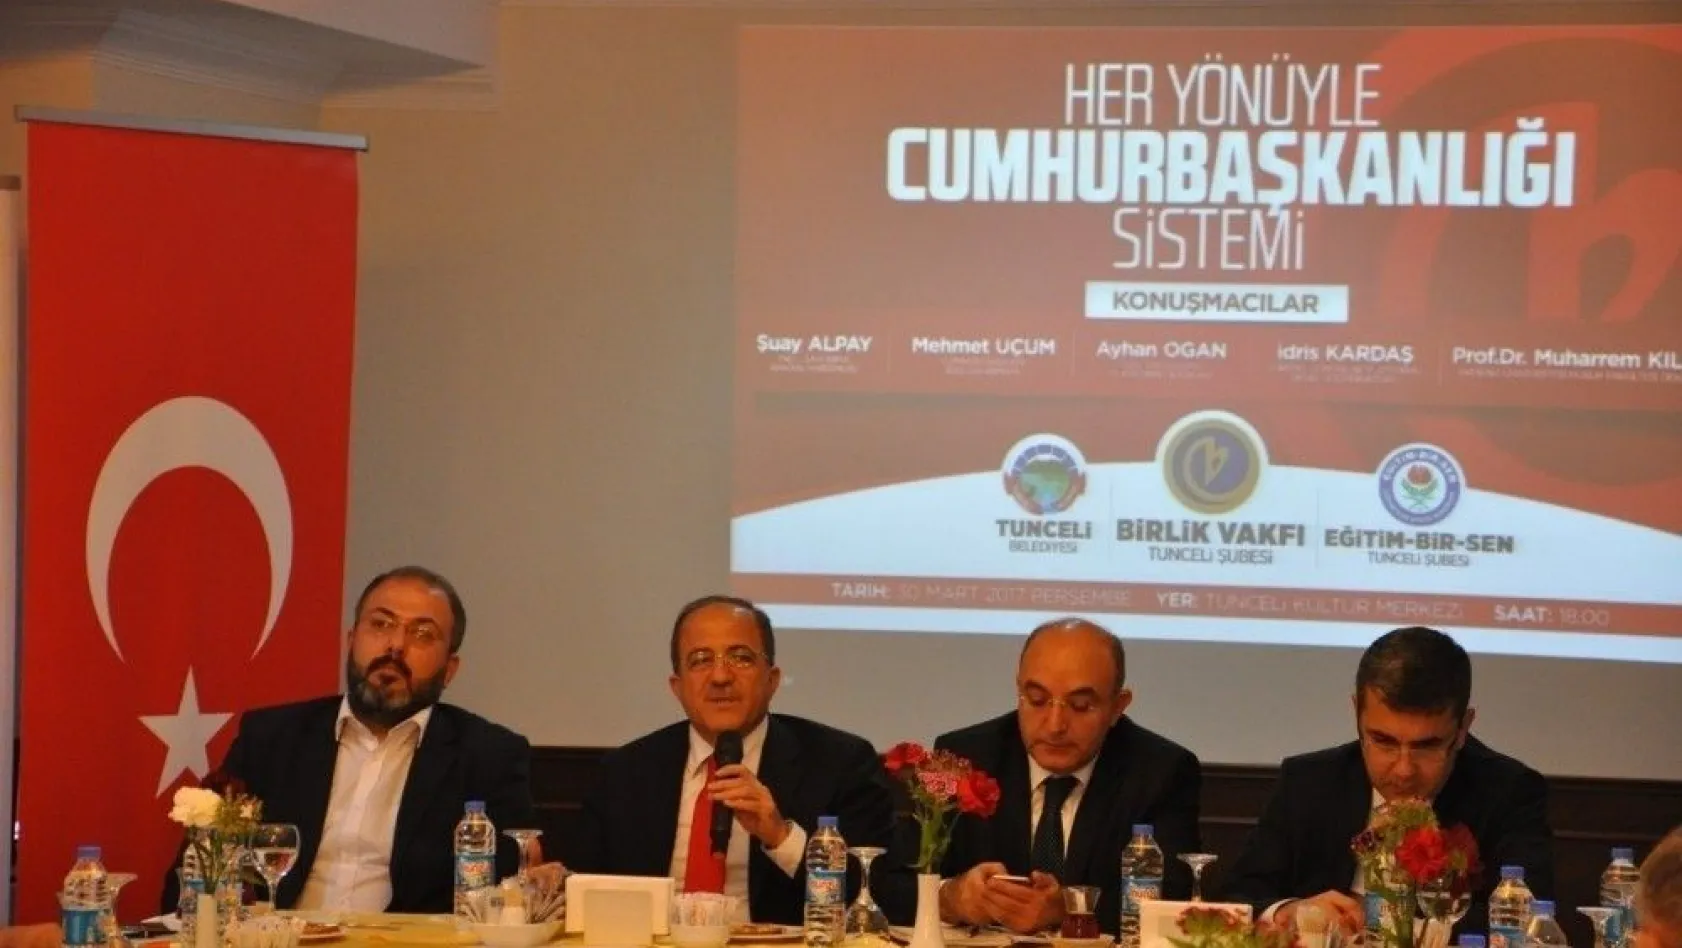 Tunceli'de 'Her Yönüyle Cumhurbaşkanlığı Sistemi' paneli
